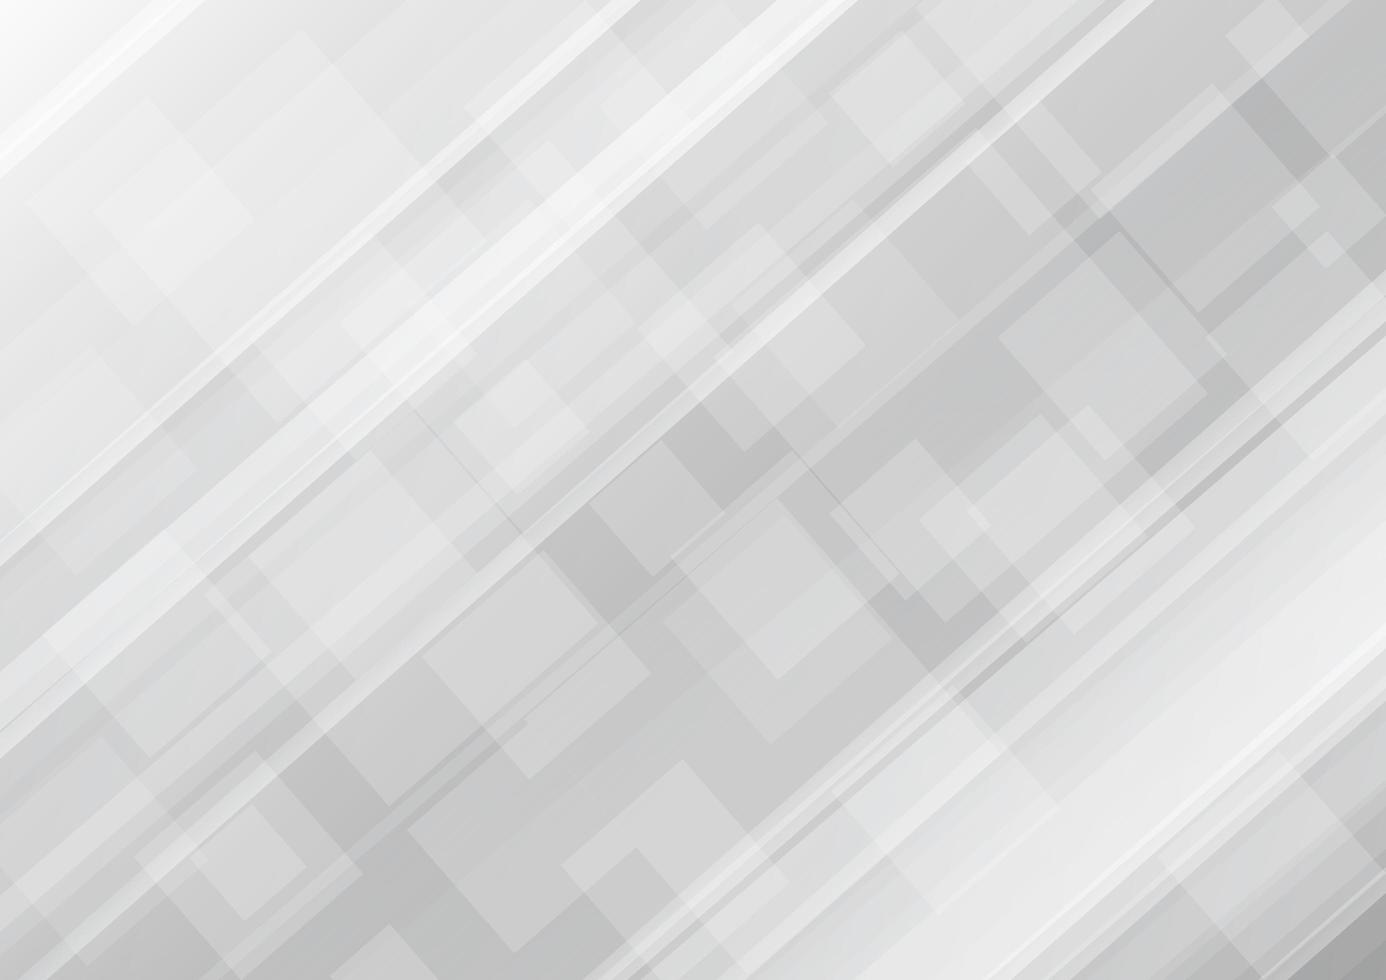 abstracte elegante diagonale grijze achtergrond met vierkantenpatroon vector